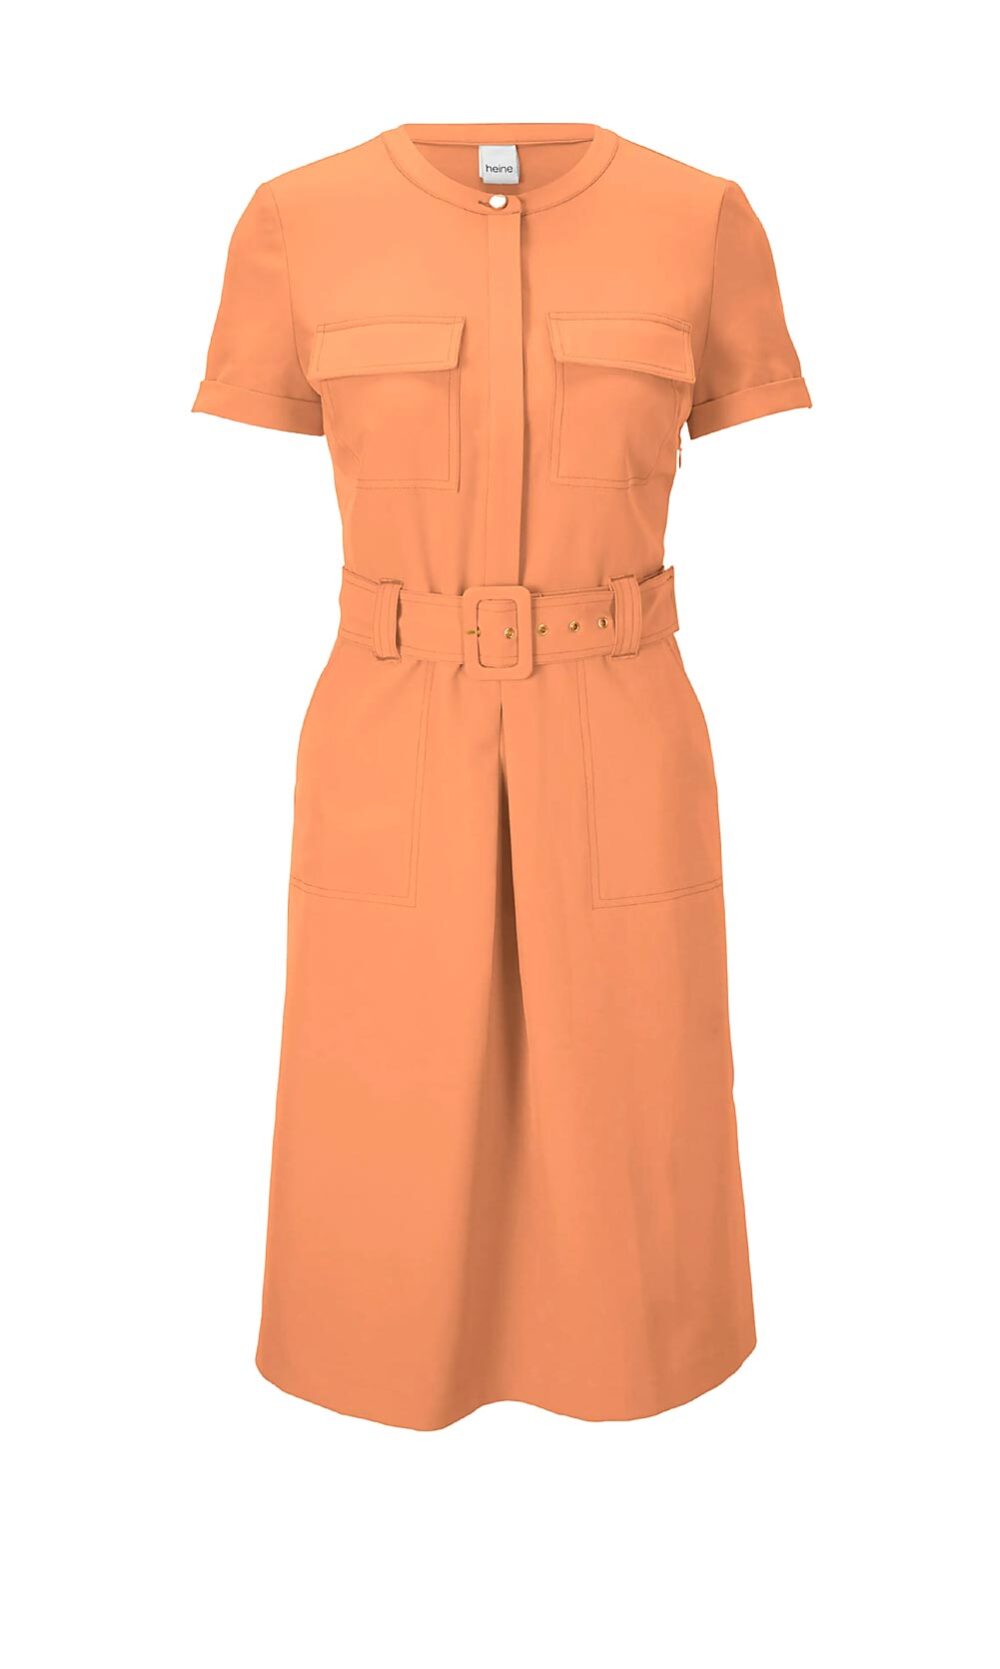 Bleistiftkleid Etuikleid Kleid Simmerkleid orange mit Gürtel Stretch von Heine Missforty